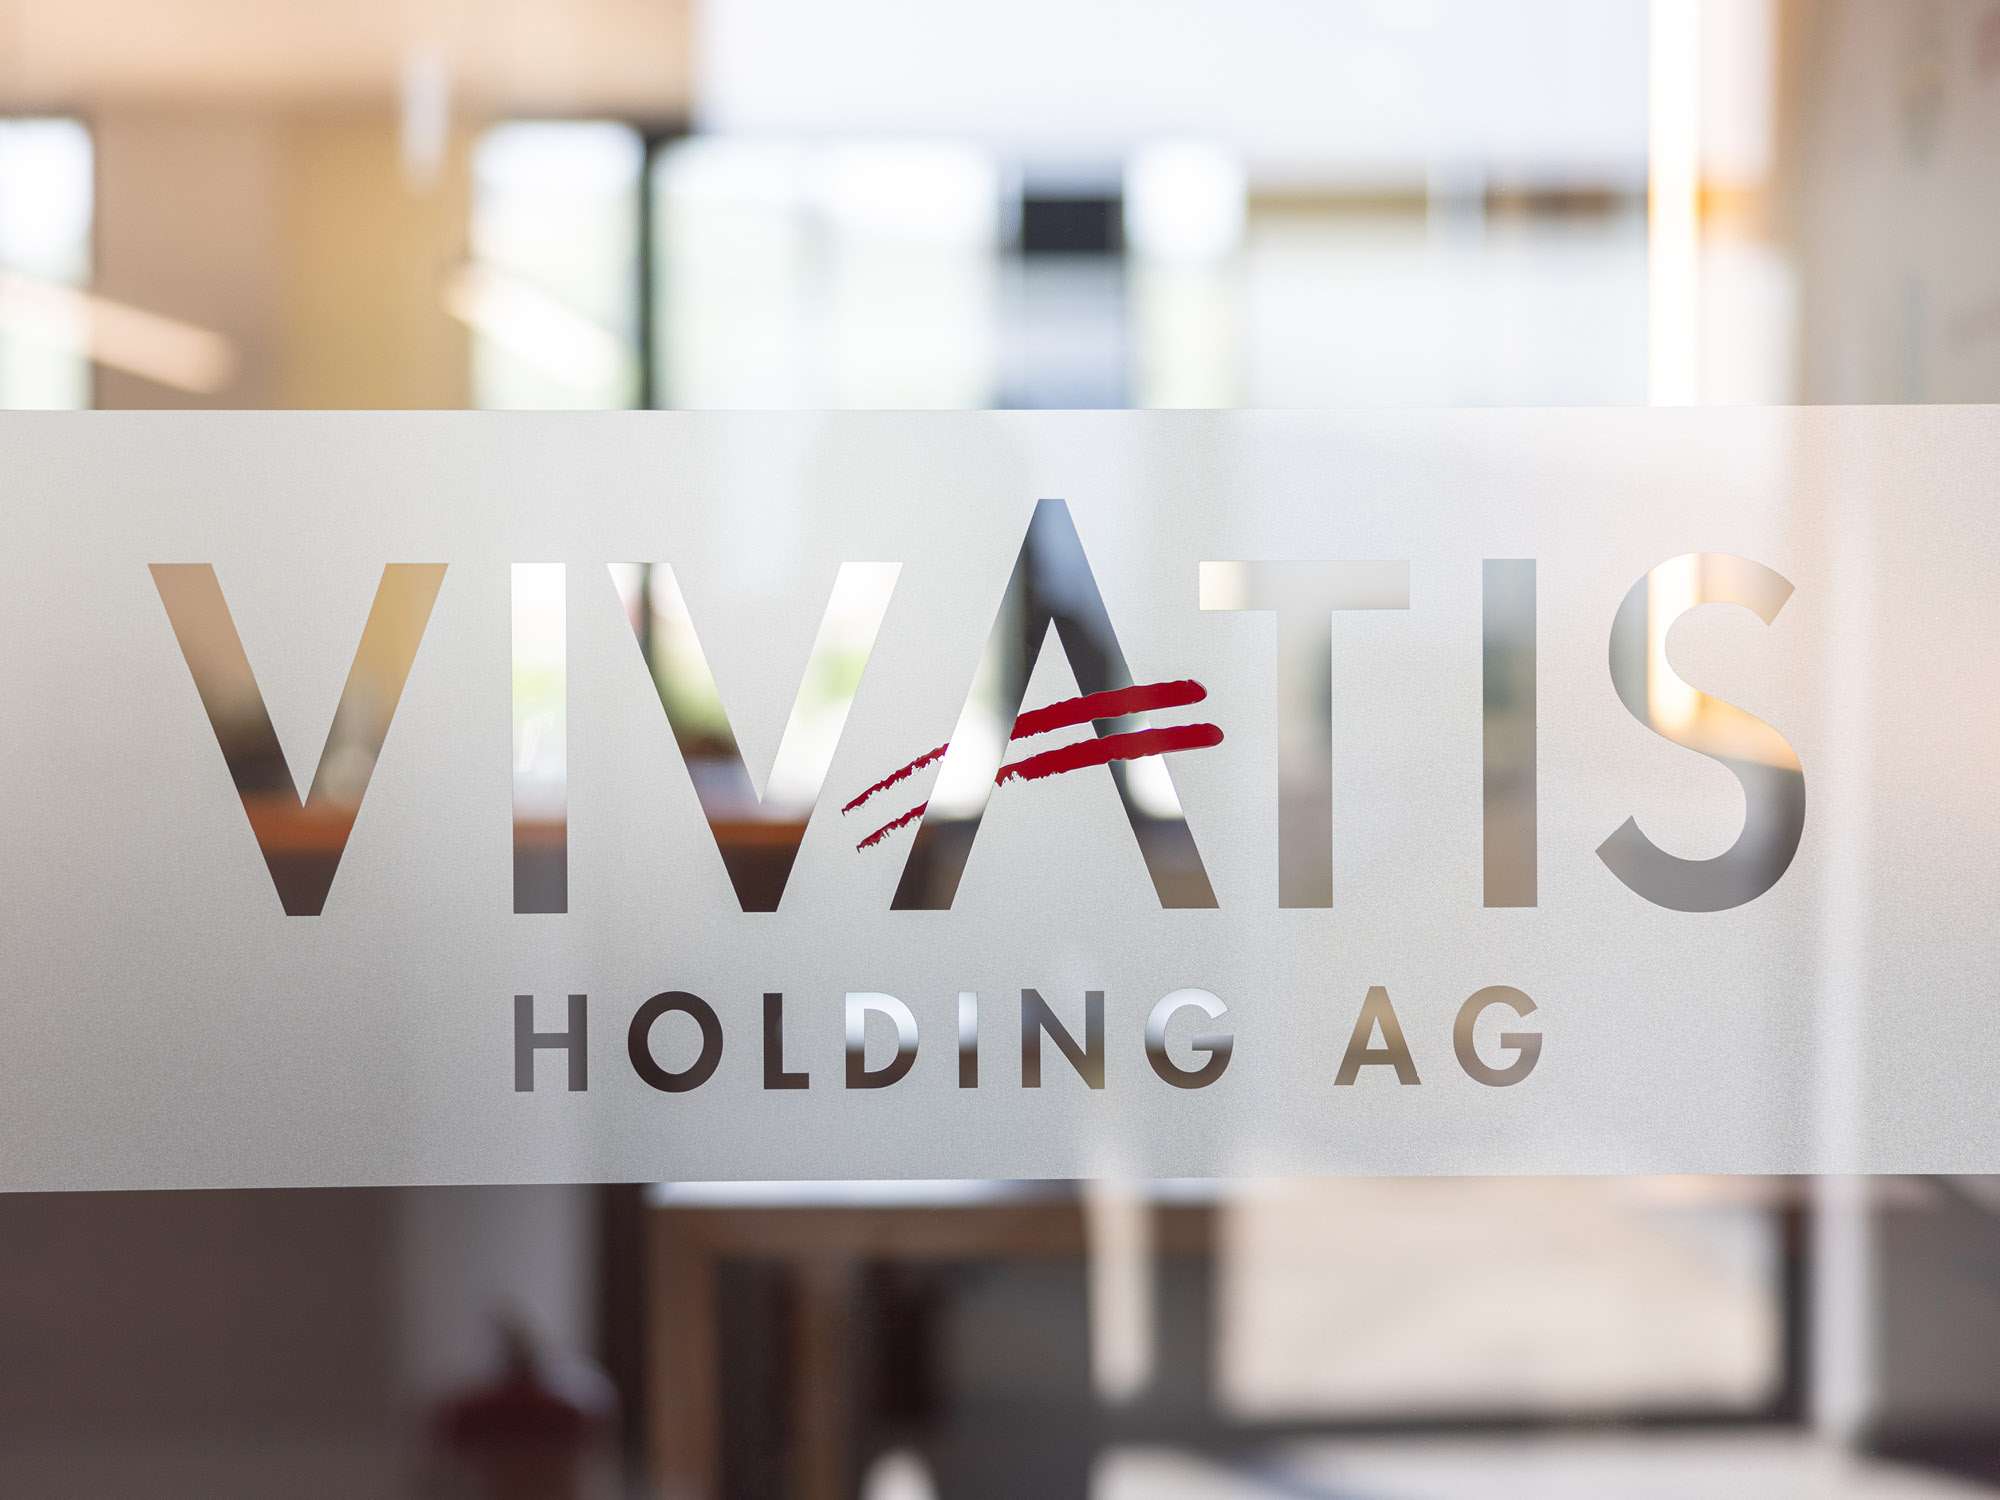 VIVATIS Holding AG – eines der führenden österreichischen Unternehmen in der Nahrungs- und Genussmittelbranche